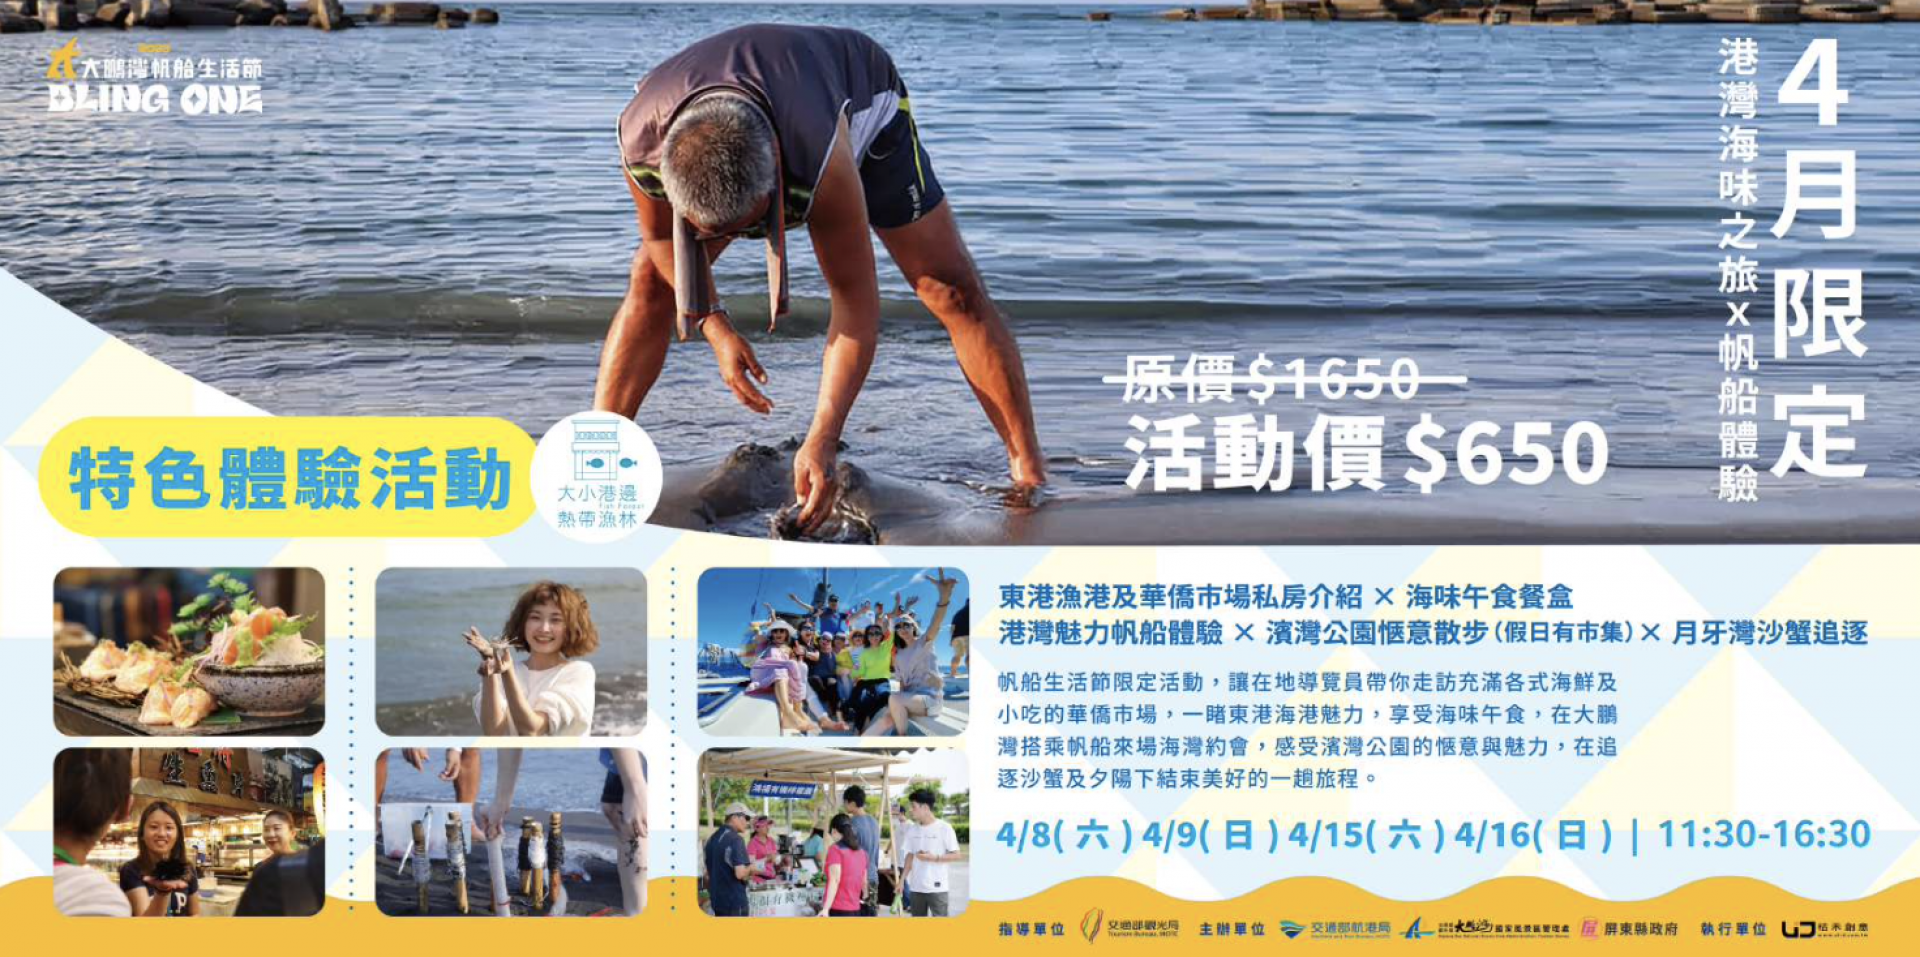 大鵬湾セーリングライフ・フェスティバル、特別な体験アクティビティ